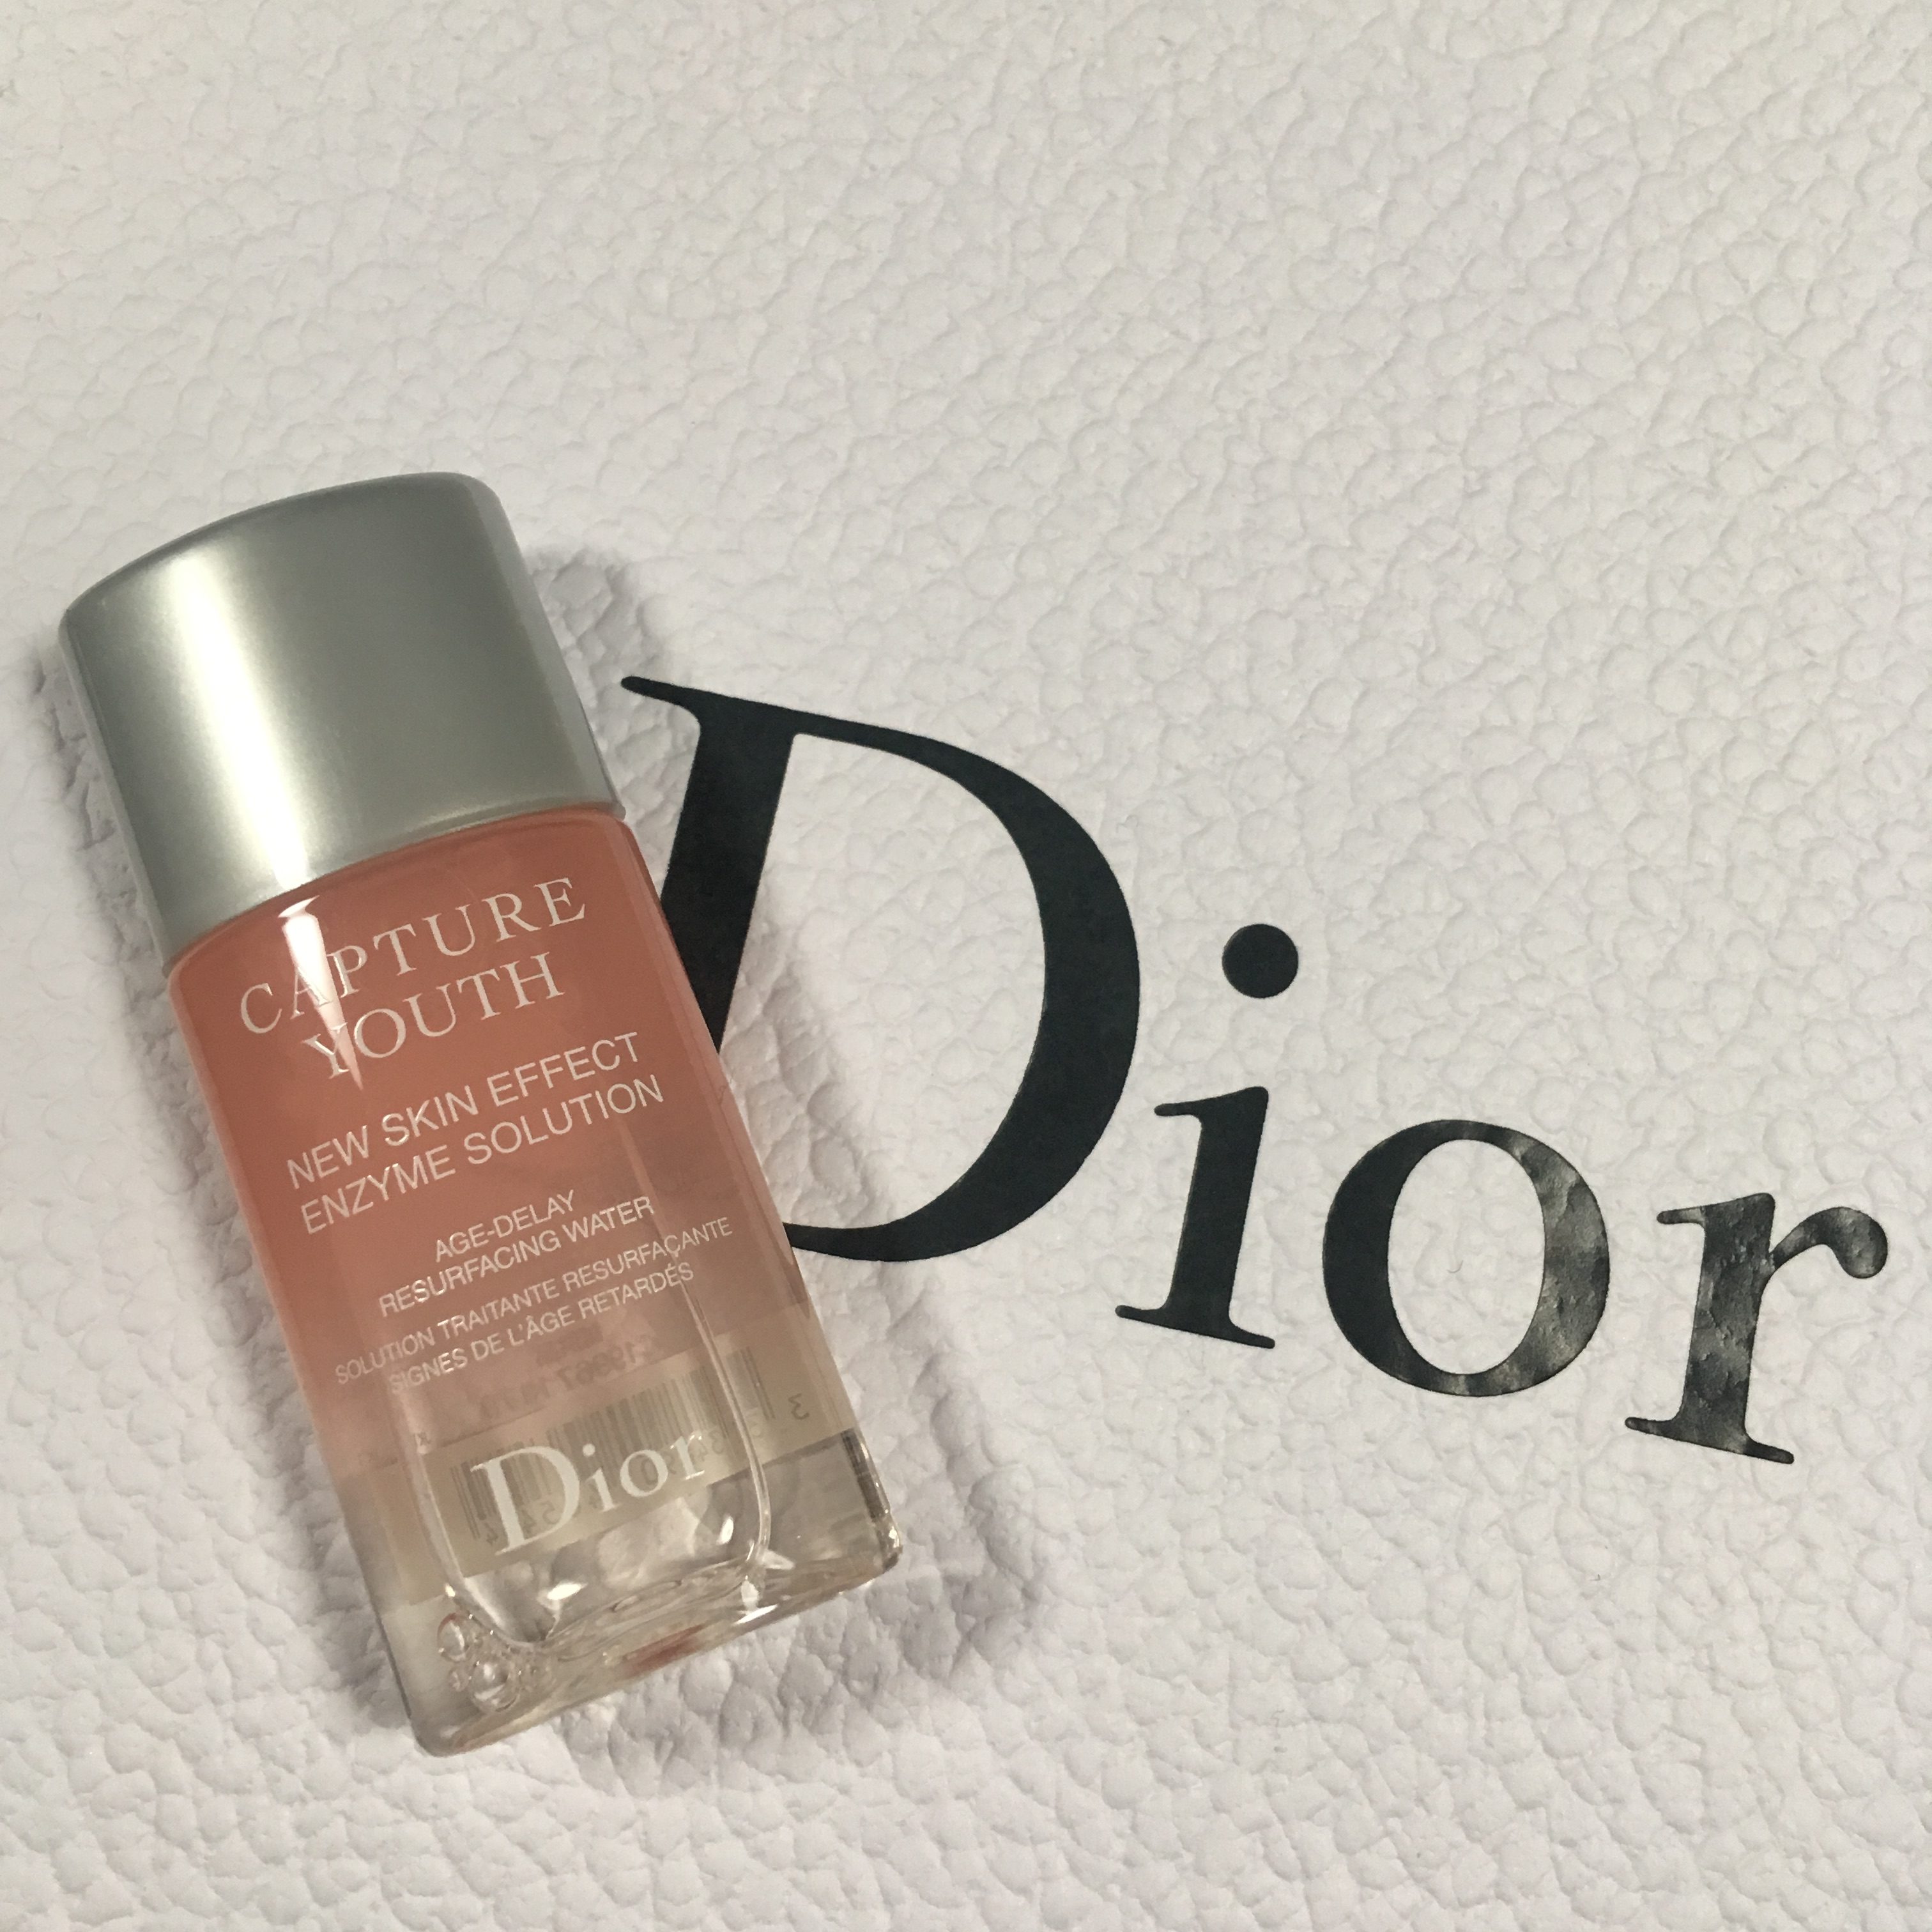 Dior】カプチュールユースの新作化粧水 エンザイムソリューションを 